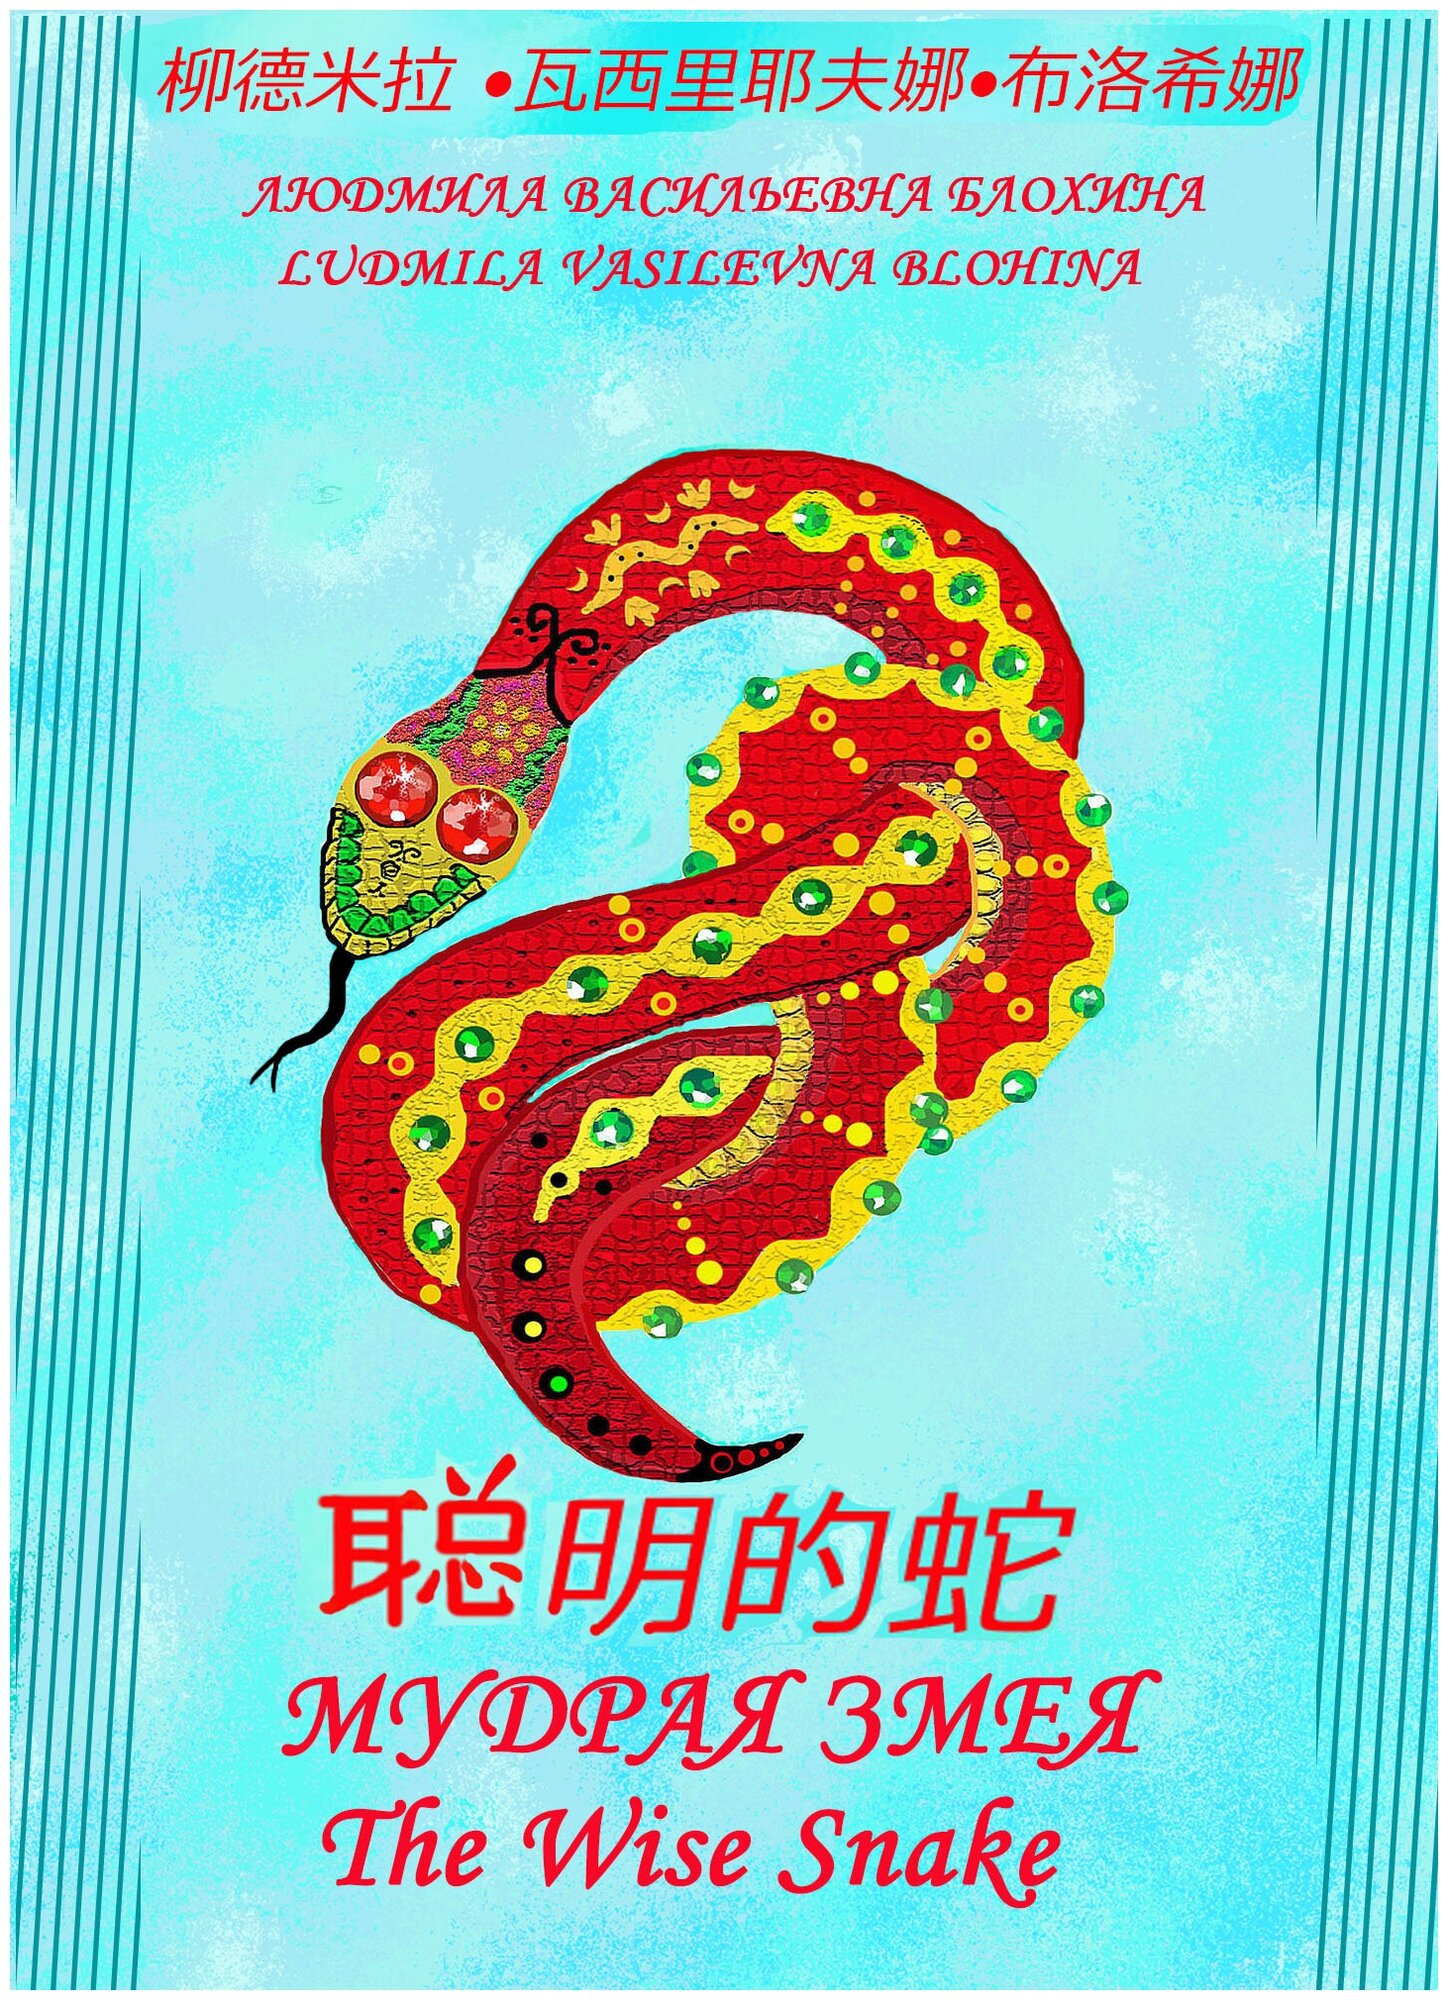 Мудрая змея. Книга на трех языках: русском, английском, китайском.